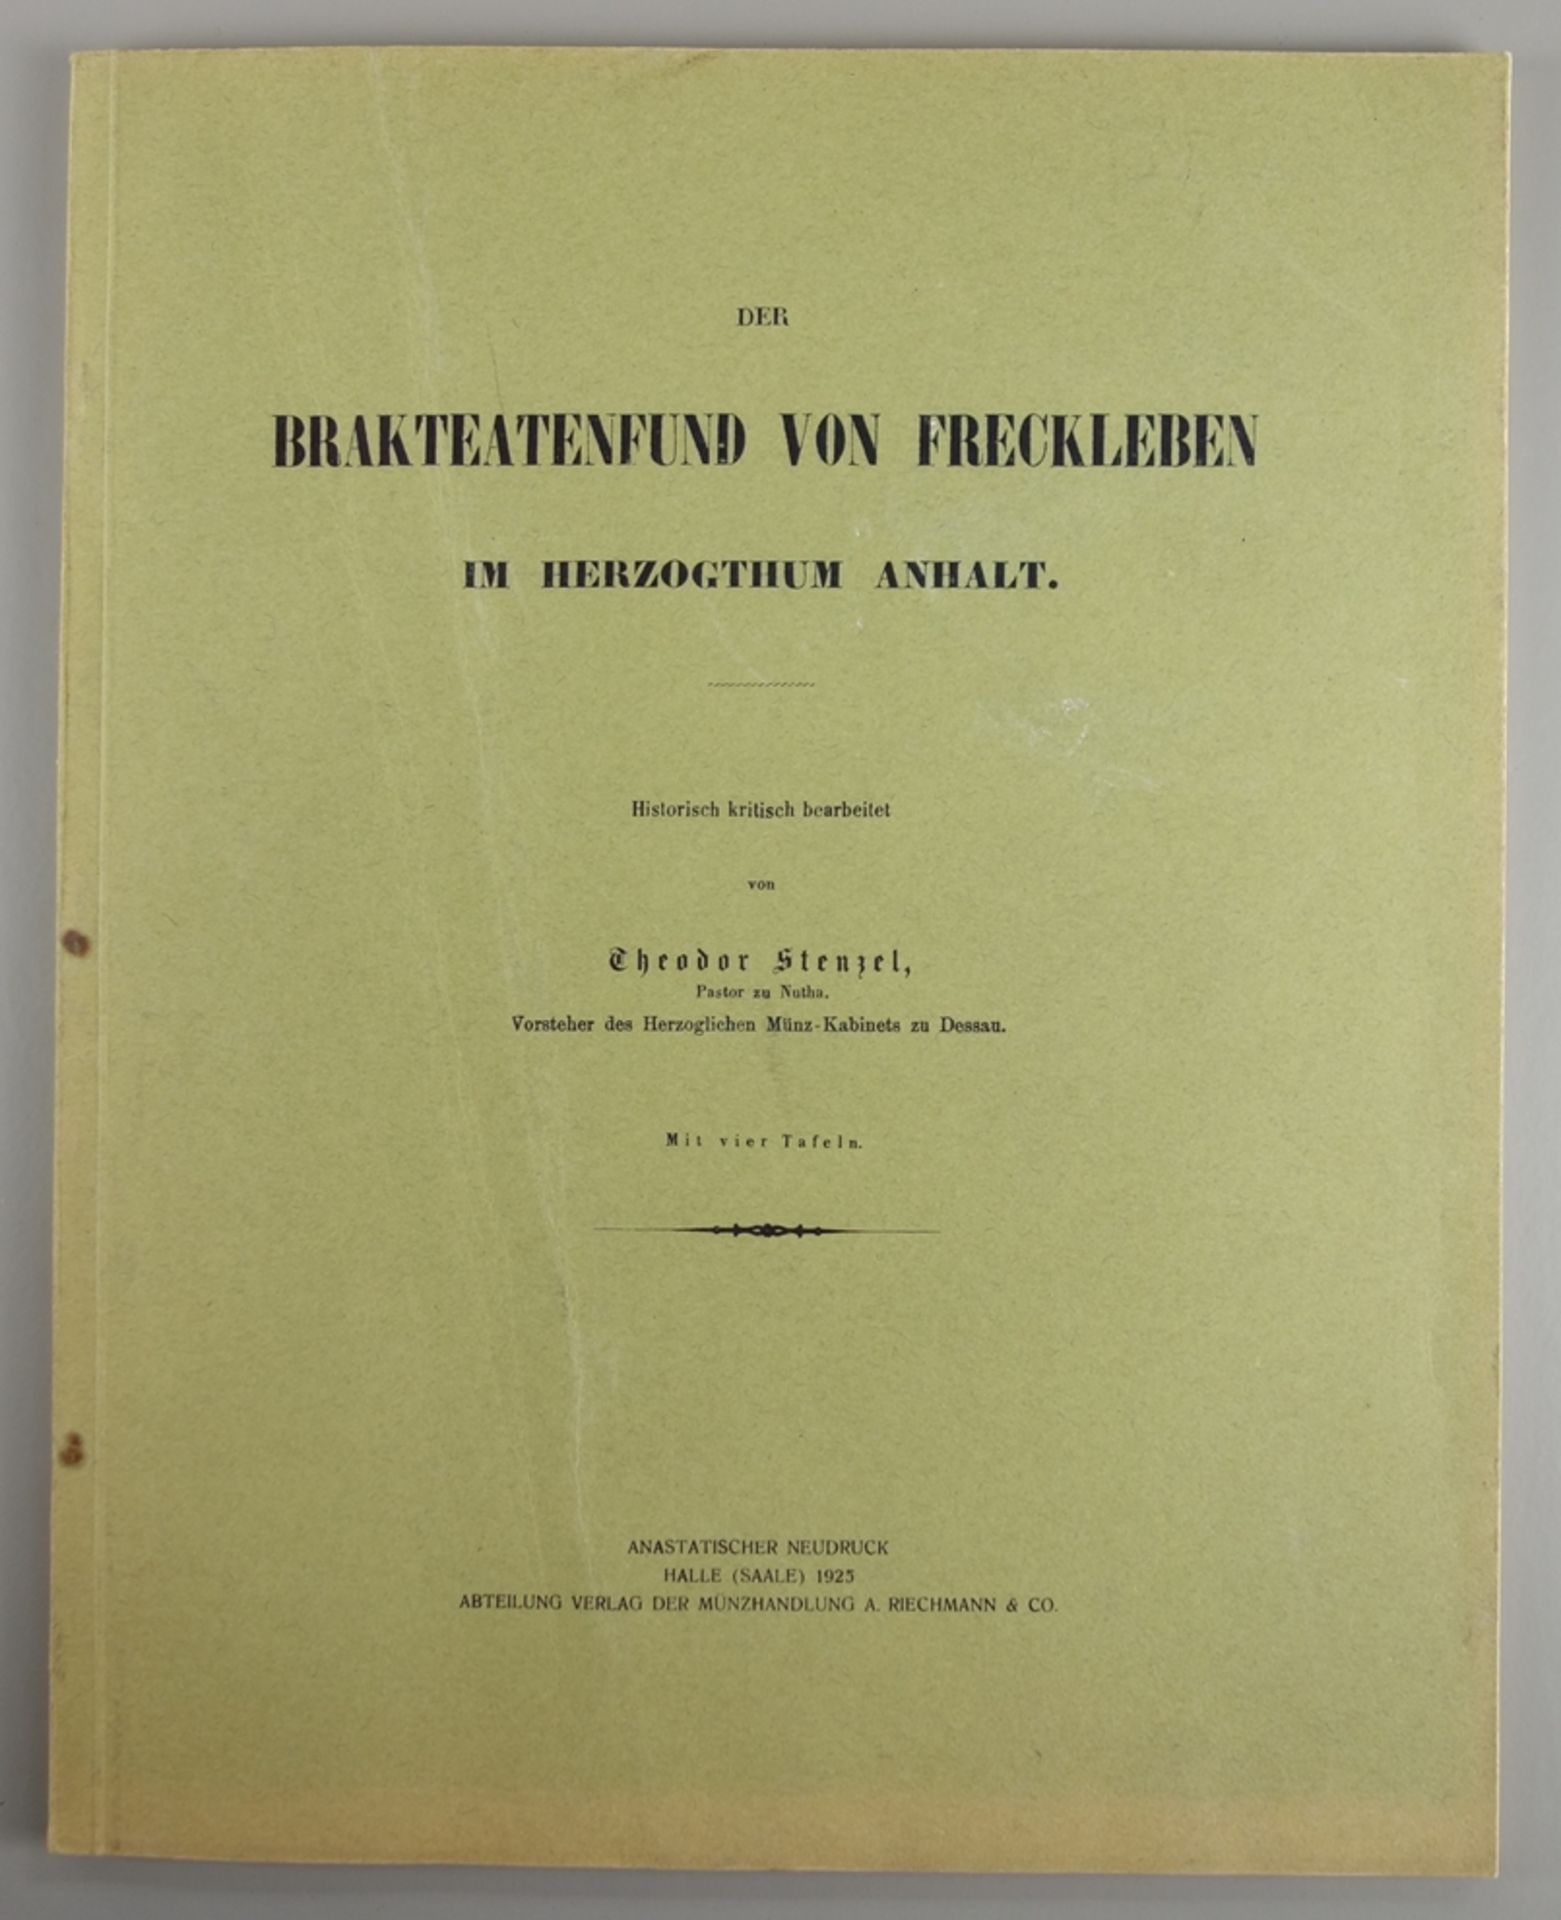 Der Brakteatenfund von Freckleben im Herzogthum Anhalt, Anastatischer Neudruck, 1924